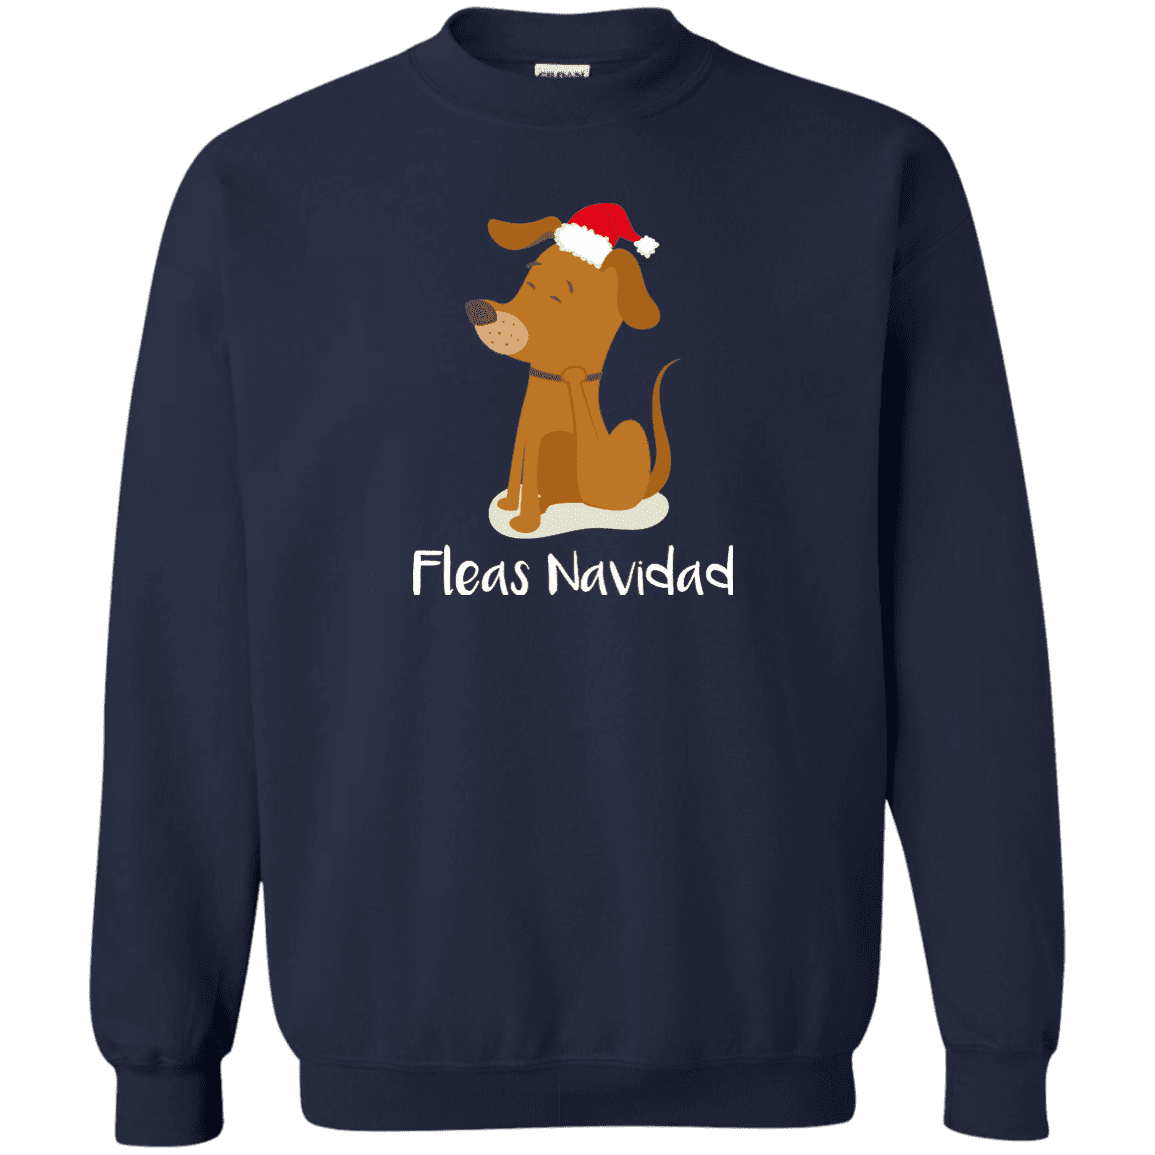 Fleas Navidad - Sweatshirt.